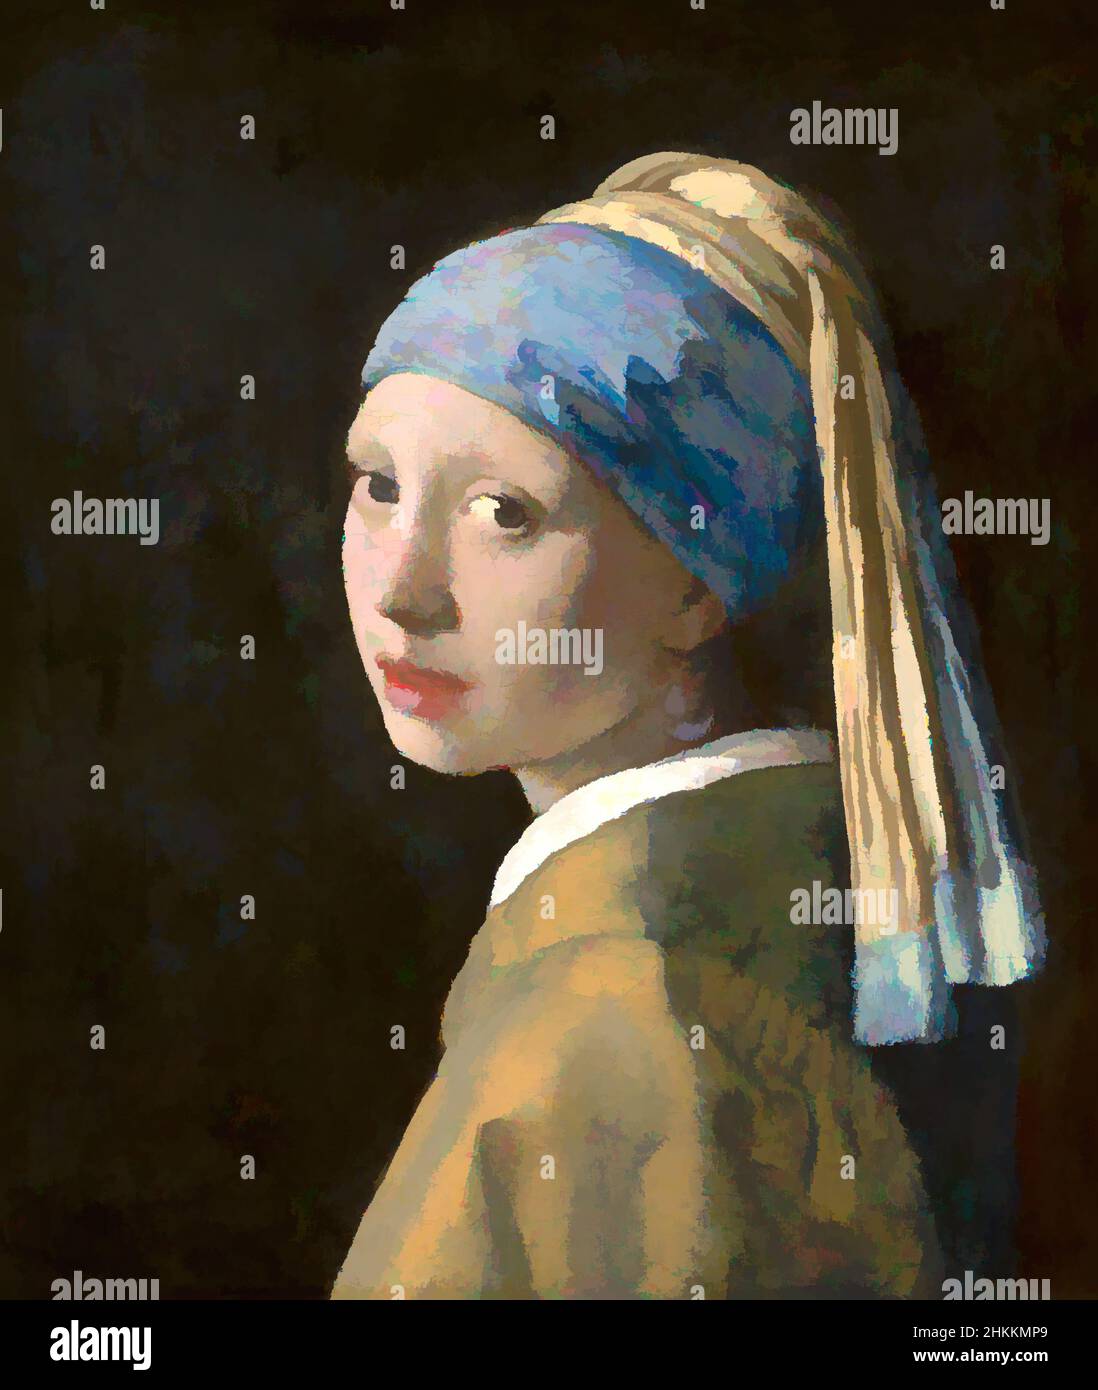 Kunst inspiriert von Mädchen mit einem Perlenohrring, Johannes Vermeer, c. 1665, Classic Works modernisiert von Artotop mit einem Schuss Moderne. Formen, Farbe und Wert, auffällige visuelle Wirkung auf Kunst. Emotionen durch Freiheit von Kunstwerken auf zeitgemäße Weise. Eine zeitlose Botschaft, die eine wild kreative neue Richtung verfolgt. Künstler, die sich dem digitalen Medium zuwenden und die Artotop NFT erschaffen Stockfoto